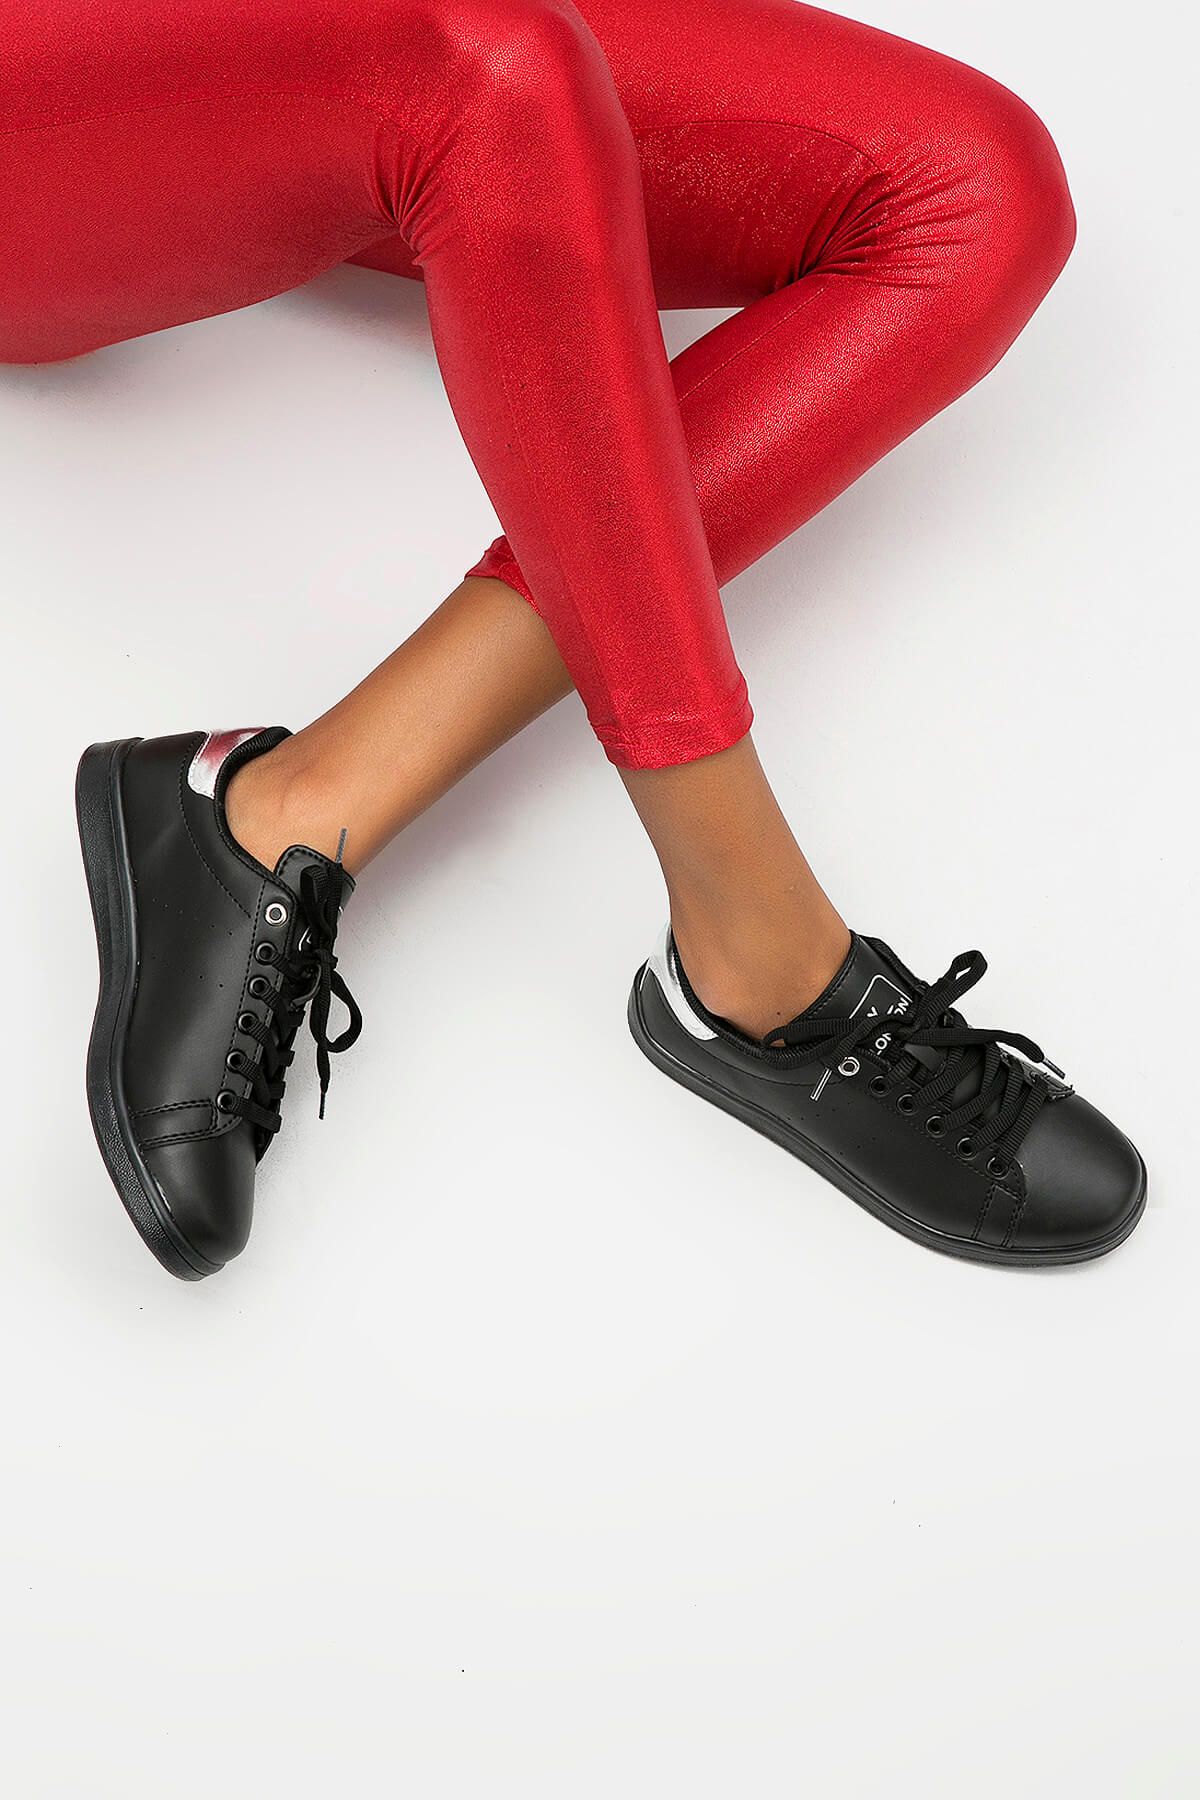 Y-London Siyah Gümüş Kadın Spor Ayakkabı 669-8-8600